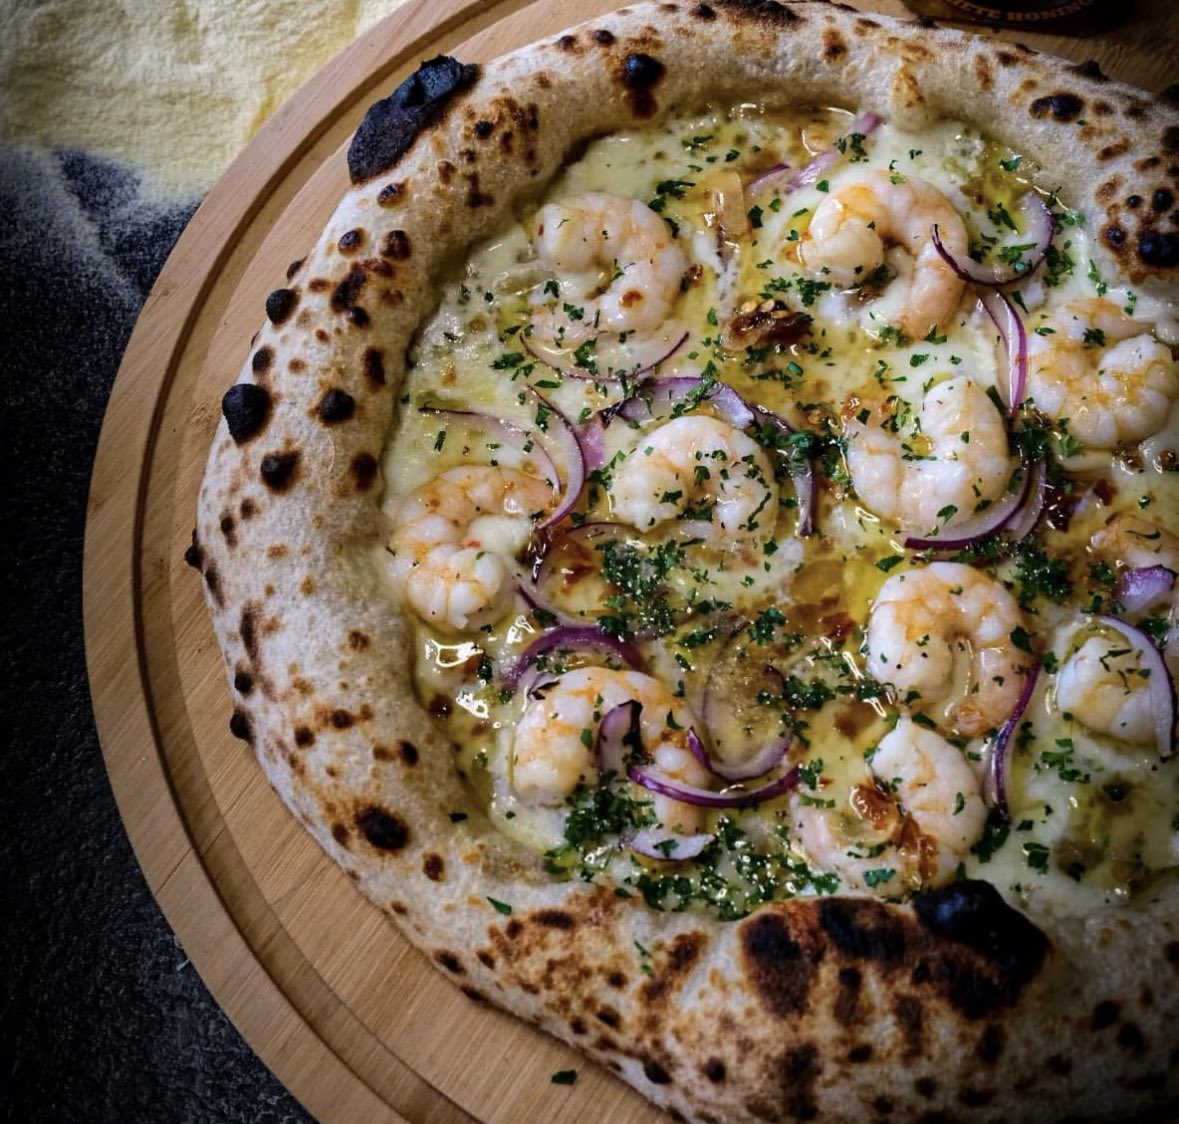 Garlic shrimp and hot honey sourdough pizza 🍕!
Ever tried shrimp on pizza ? Smash or pass?